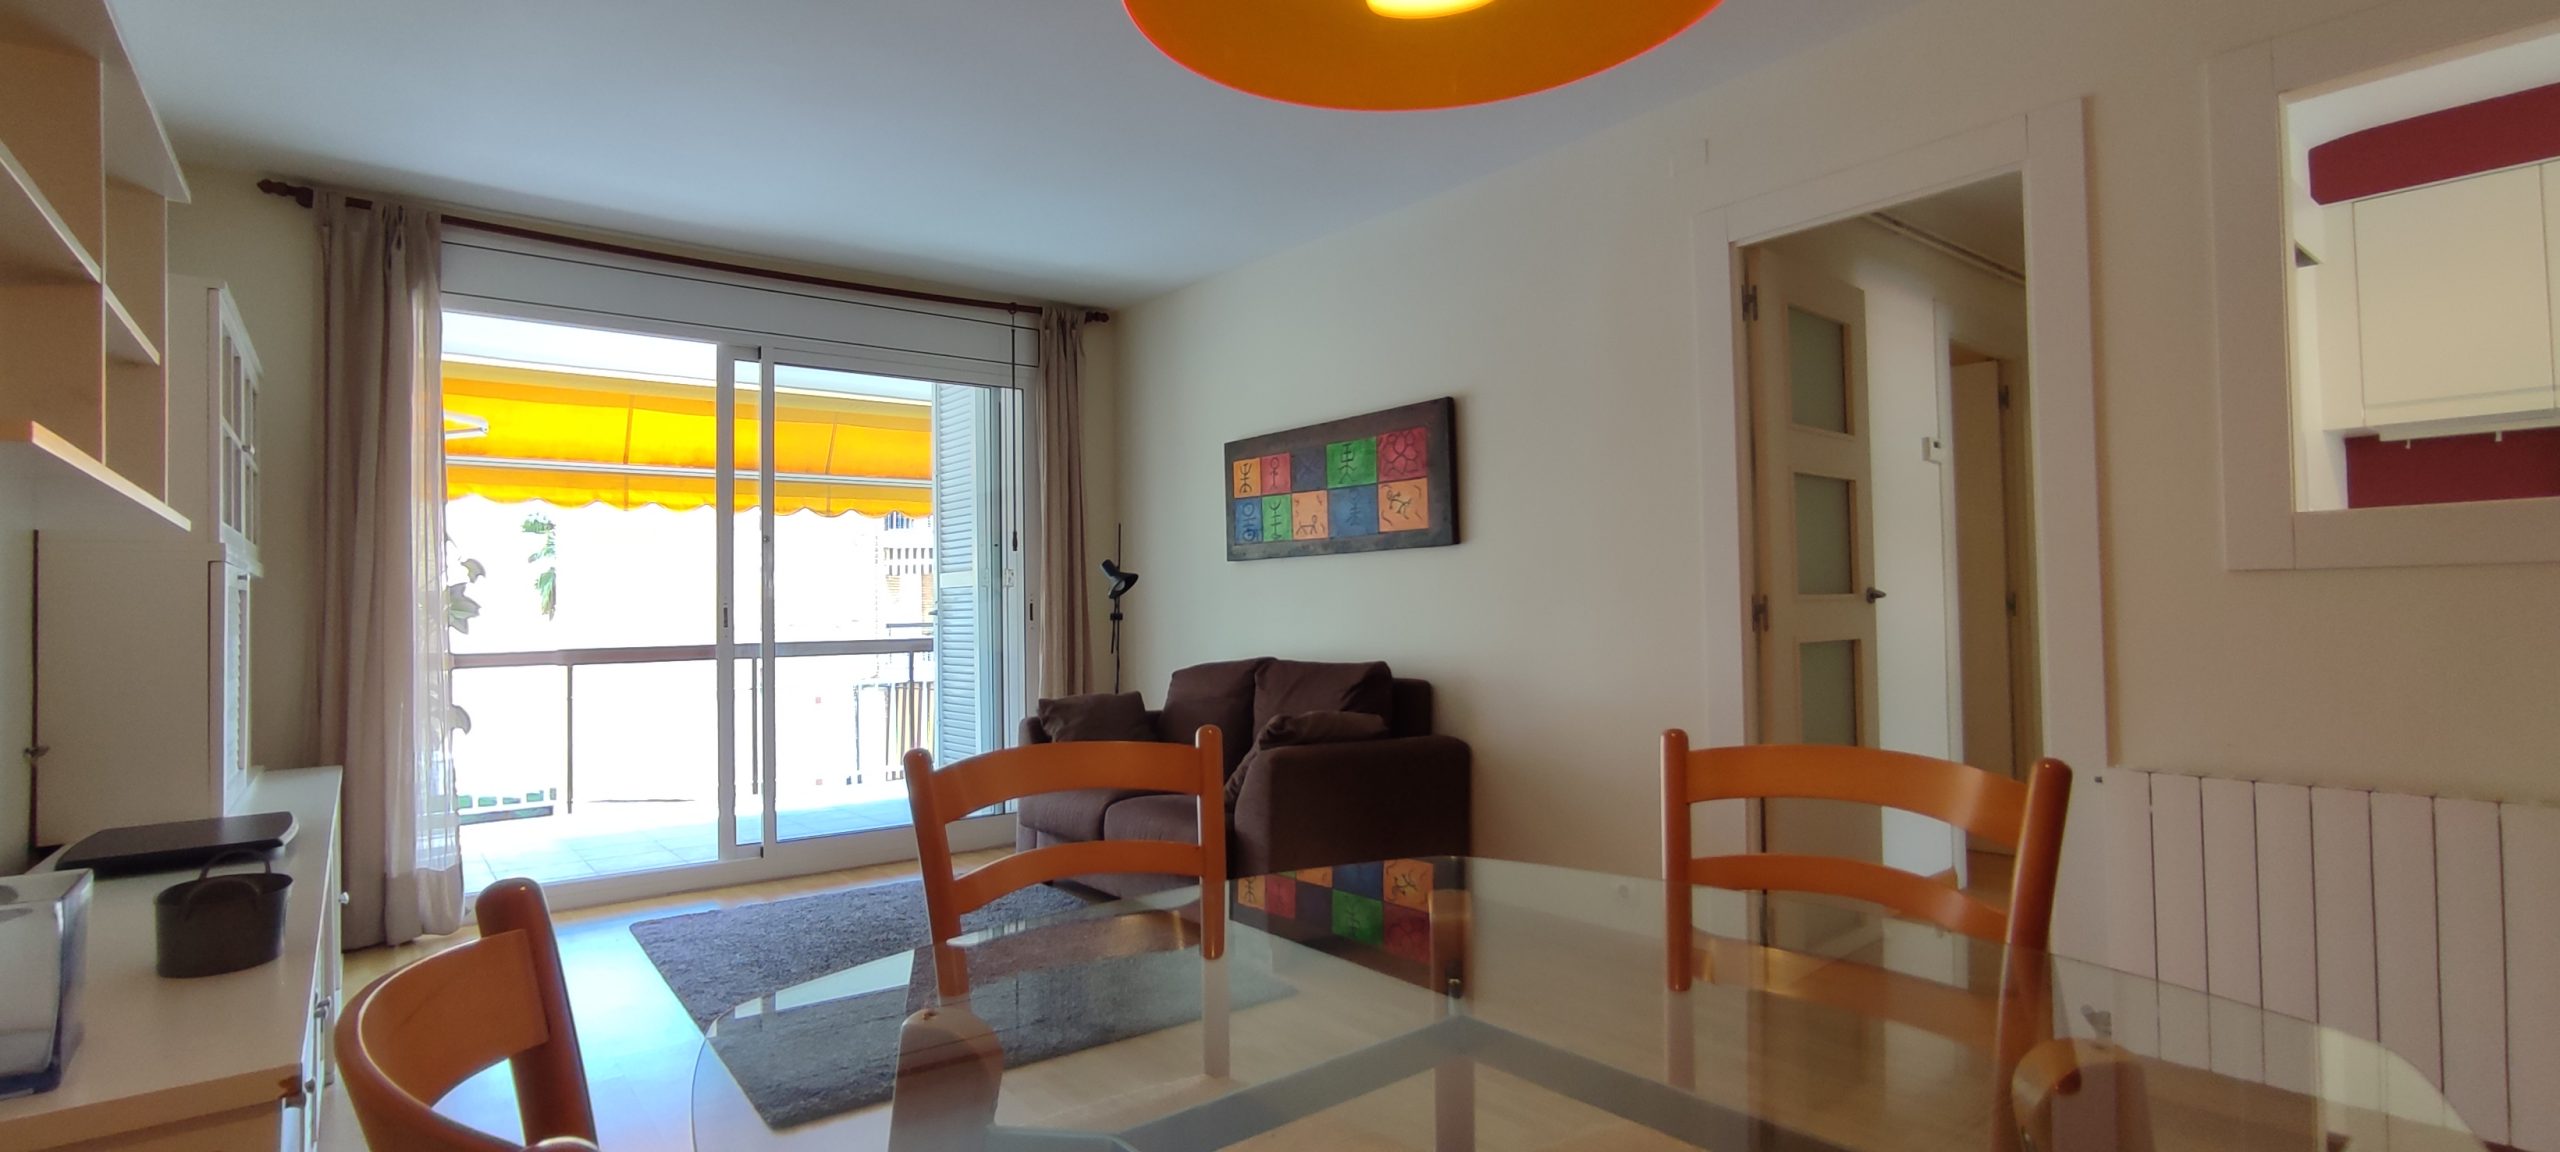 Apartamento soleado, luminoso y reformado en Gava Mar